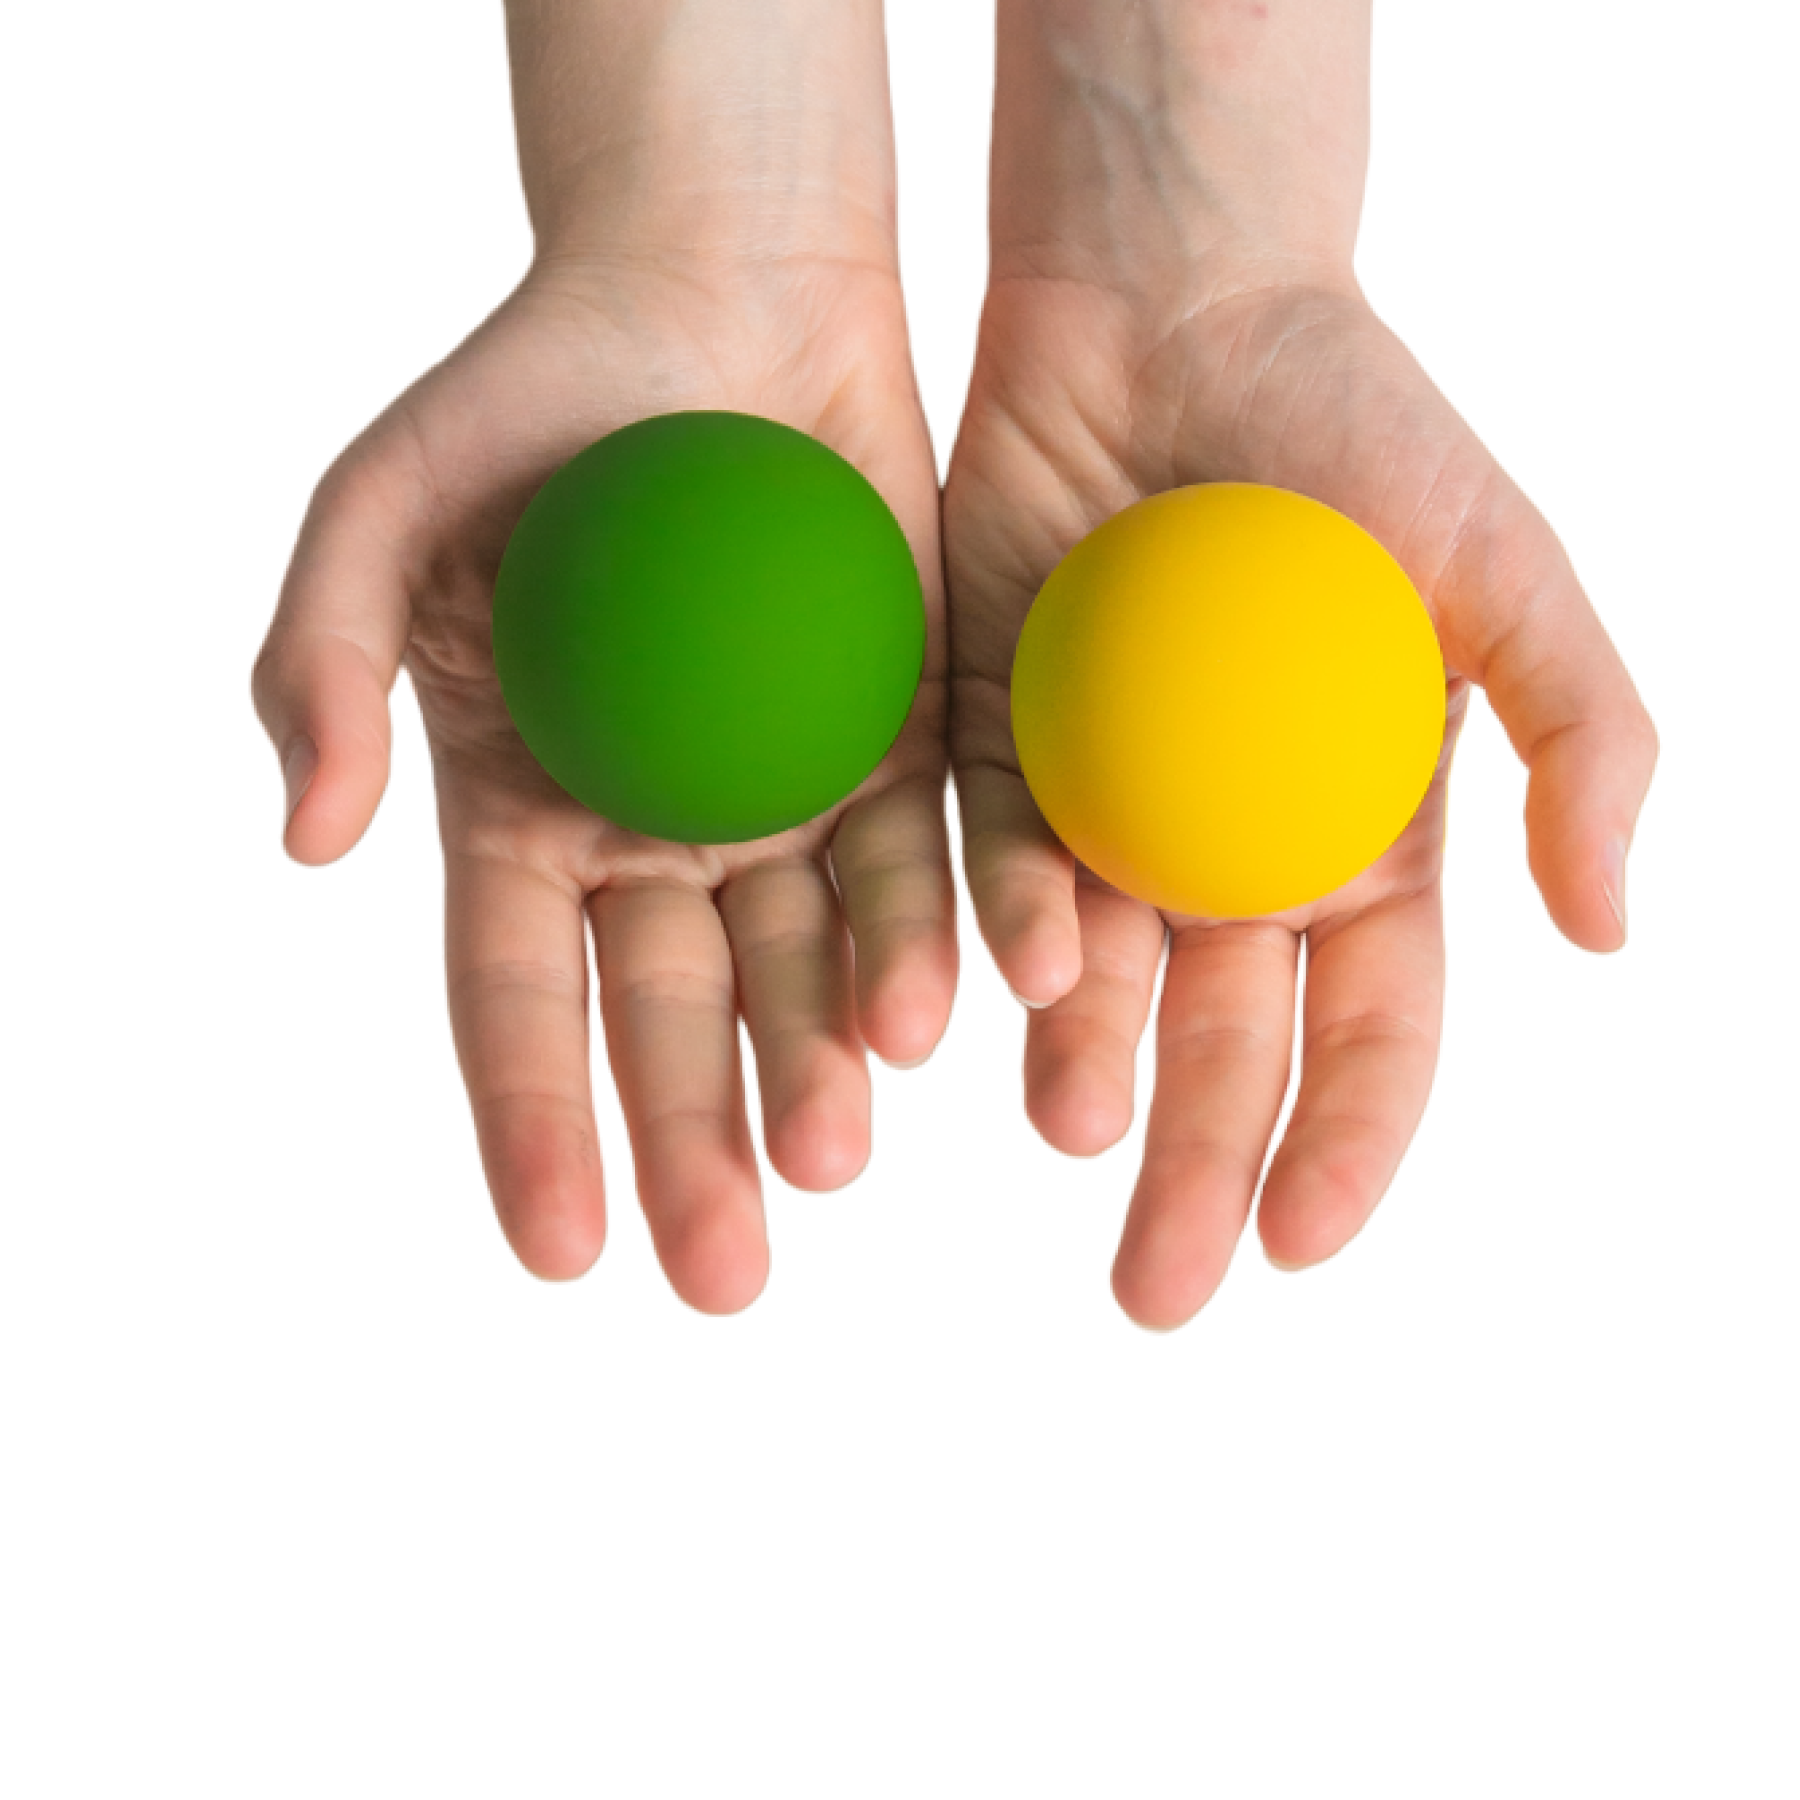 Кинезиологические сенсорные мячи Нейротренажерырф для Доски Бильгоу жёлтый и зелёный мячи прыгуны 9 штук halsall toys internationals